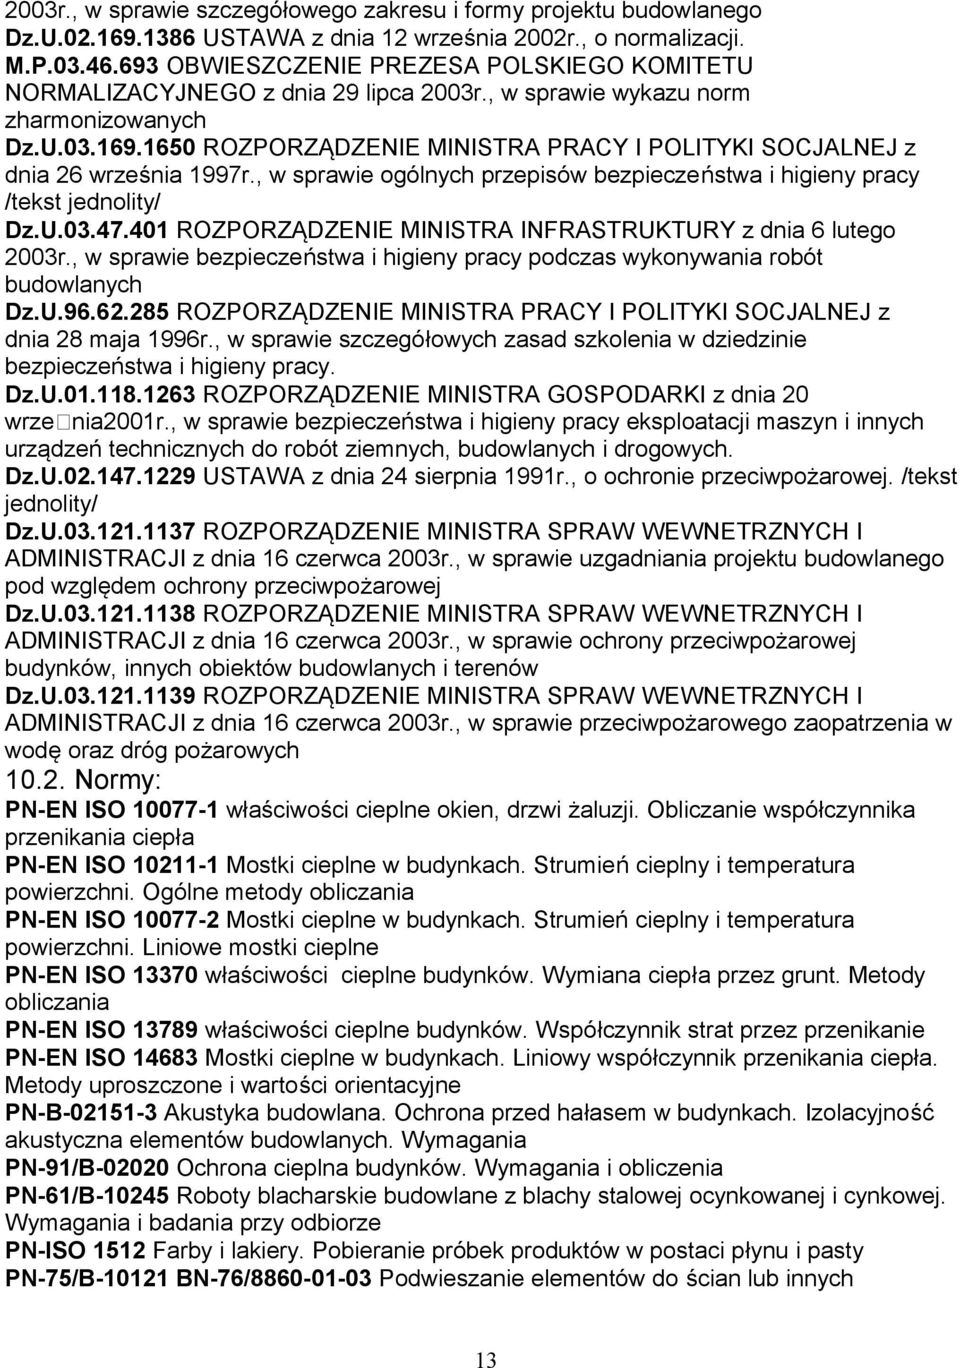 1650 ROZPORZĄDZENIE MINISTRA PRACY I POLITYKI SOCJALNEJ z dnia 26 września 1997r., w sprawie ogólnych przepisów bezpieczeństwa i higieny pracy /tekst jednolity/ Dz.U.03.47.